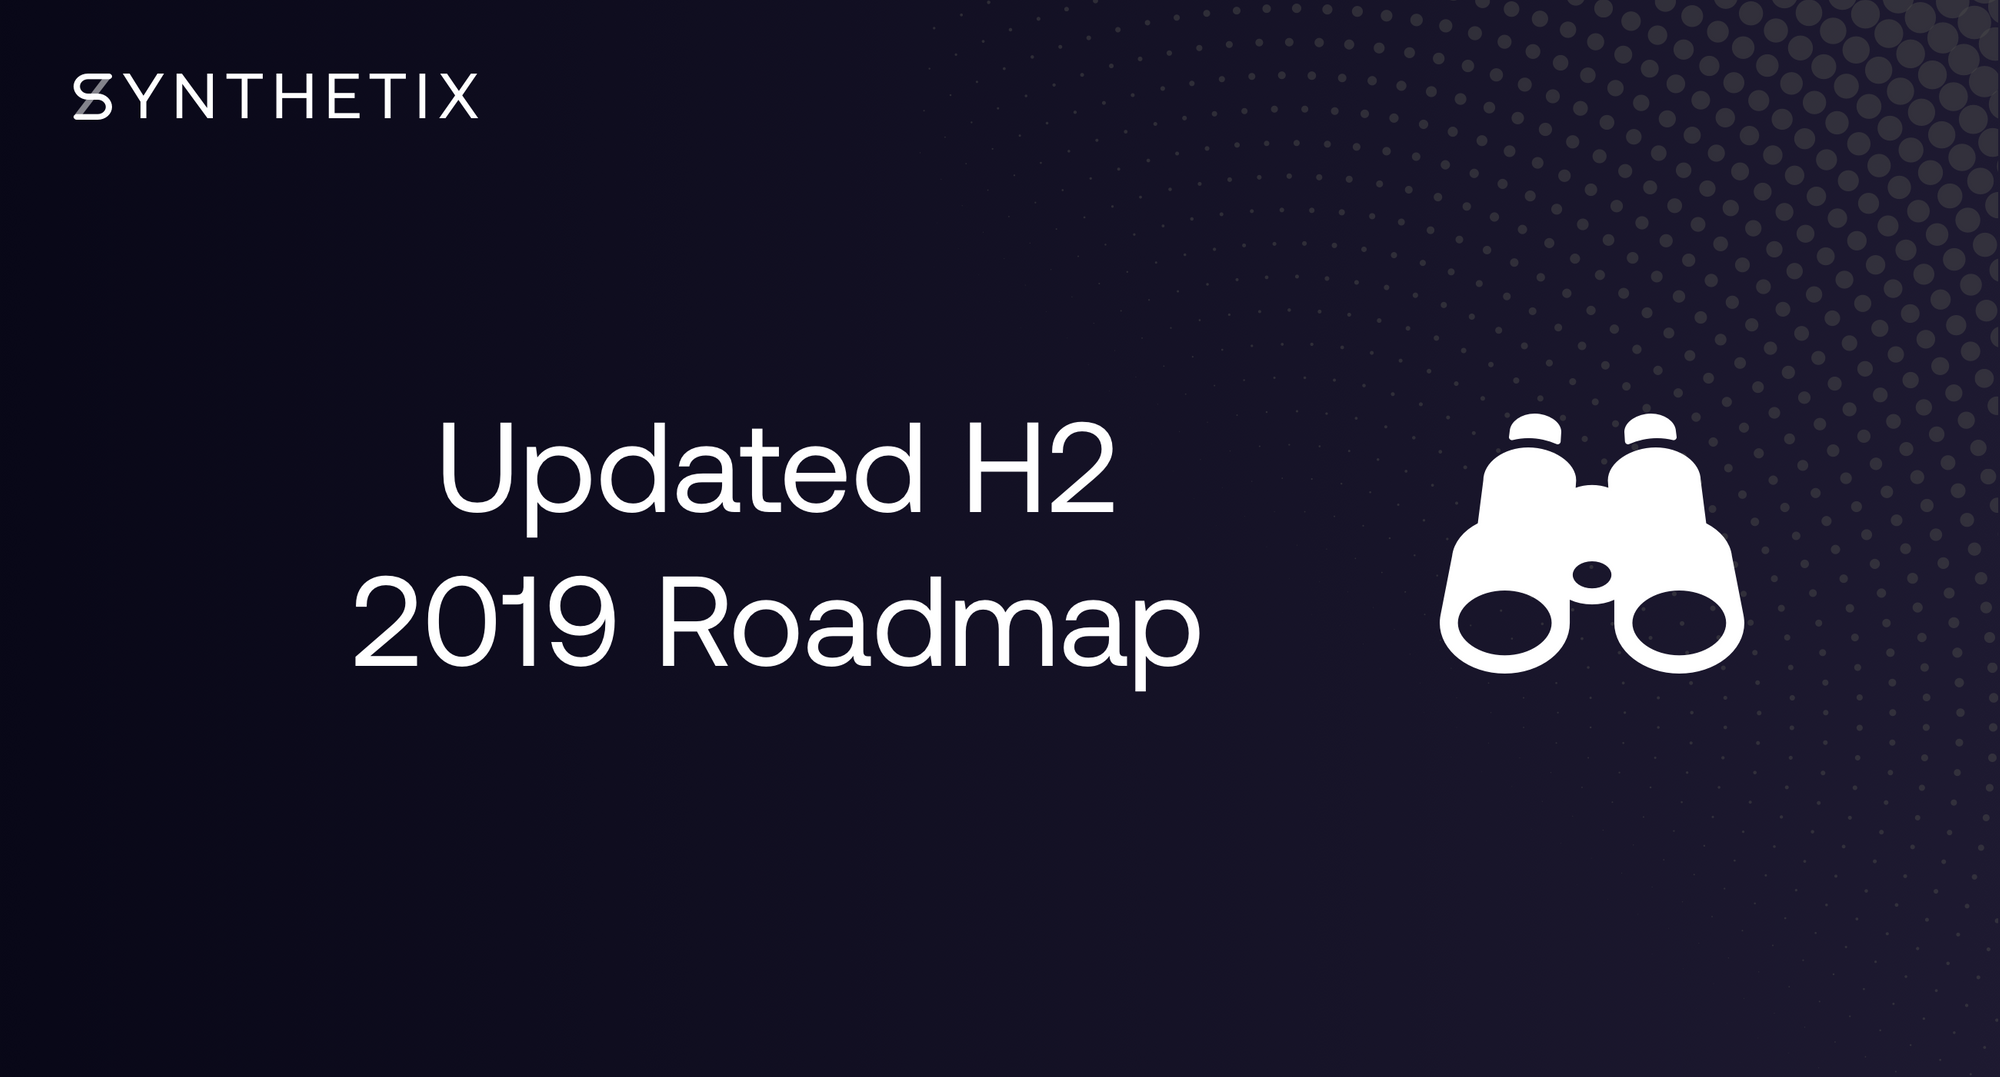 H2 2019 Roadmap